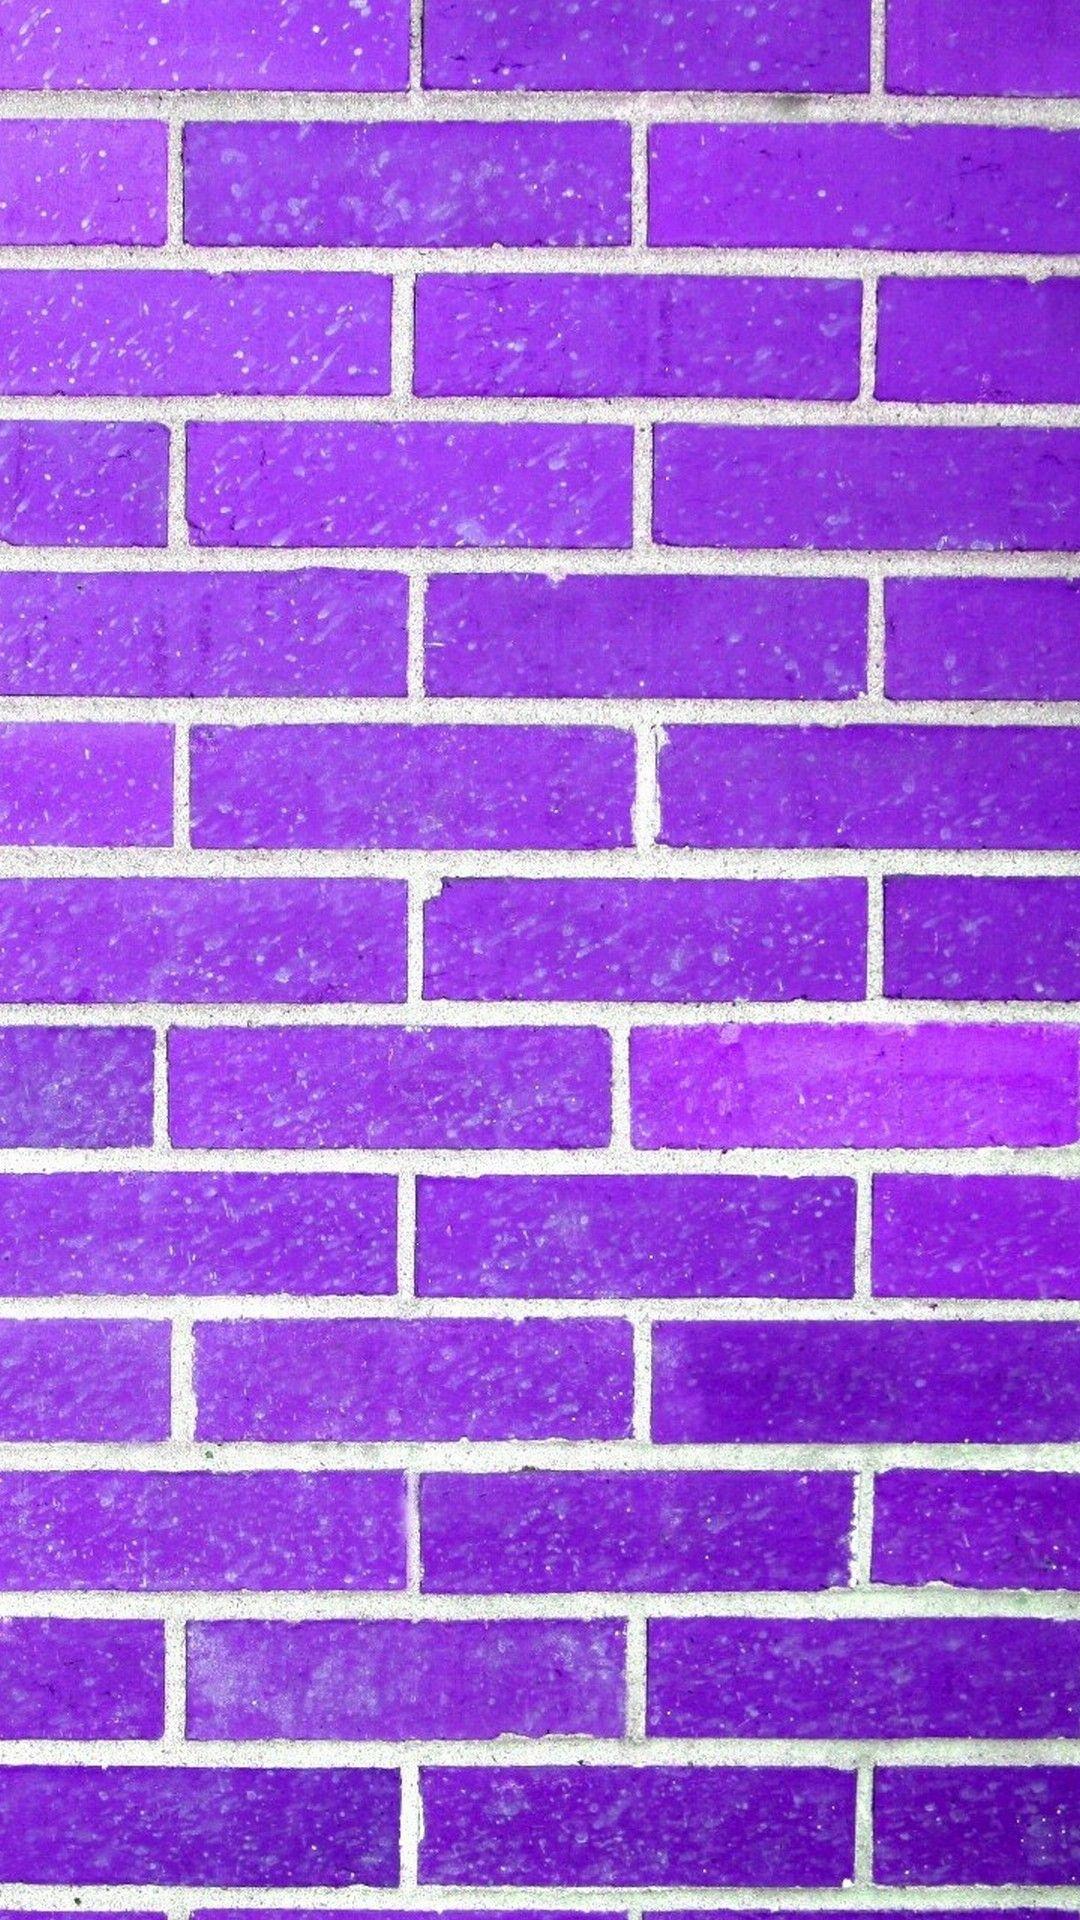 Hình nền tường gạch màu tím đẹp nhất: Với tường gạch màu tím, bạn sẽ không cần phải tạo thêm nhiều điểm nhấn khác để làm cho căn phòng của mình nổi bật. Bởi vì tường gạch màu tím đã đủ đẹp để thu hút mọi ánh nhìn. Đảm bảo hình nền tường gạch màu tím sẽ làm được điều này.